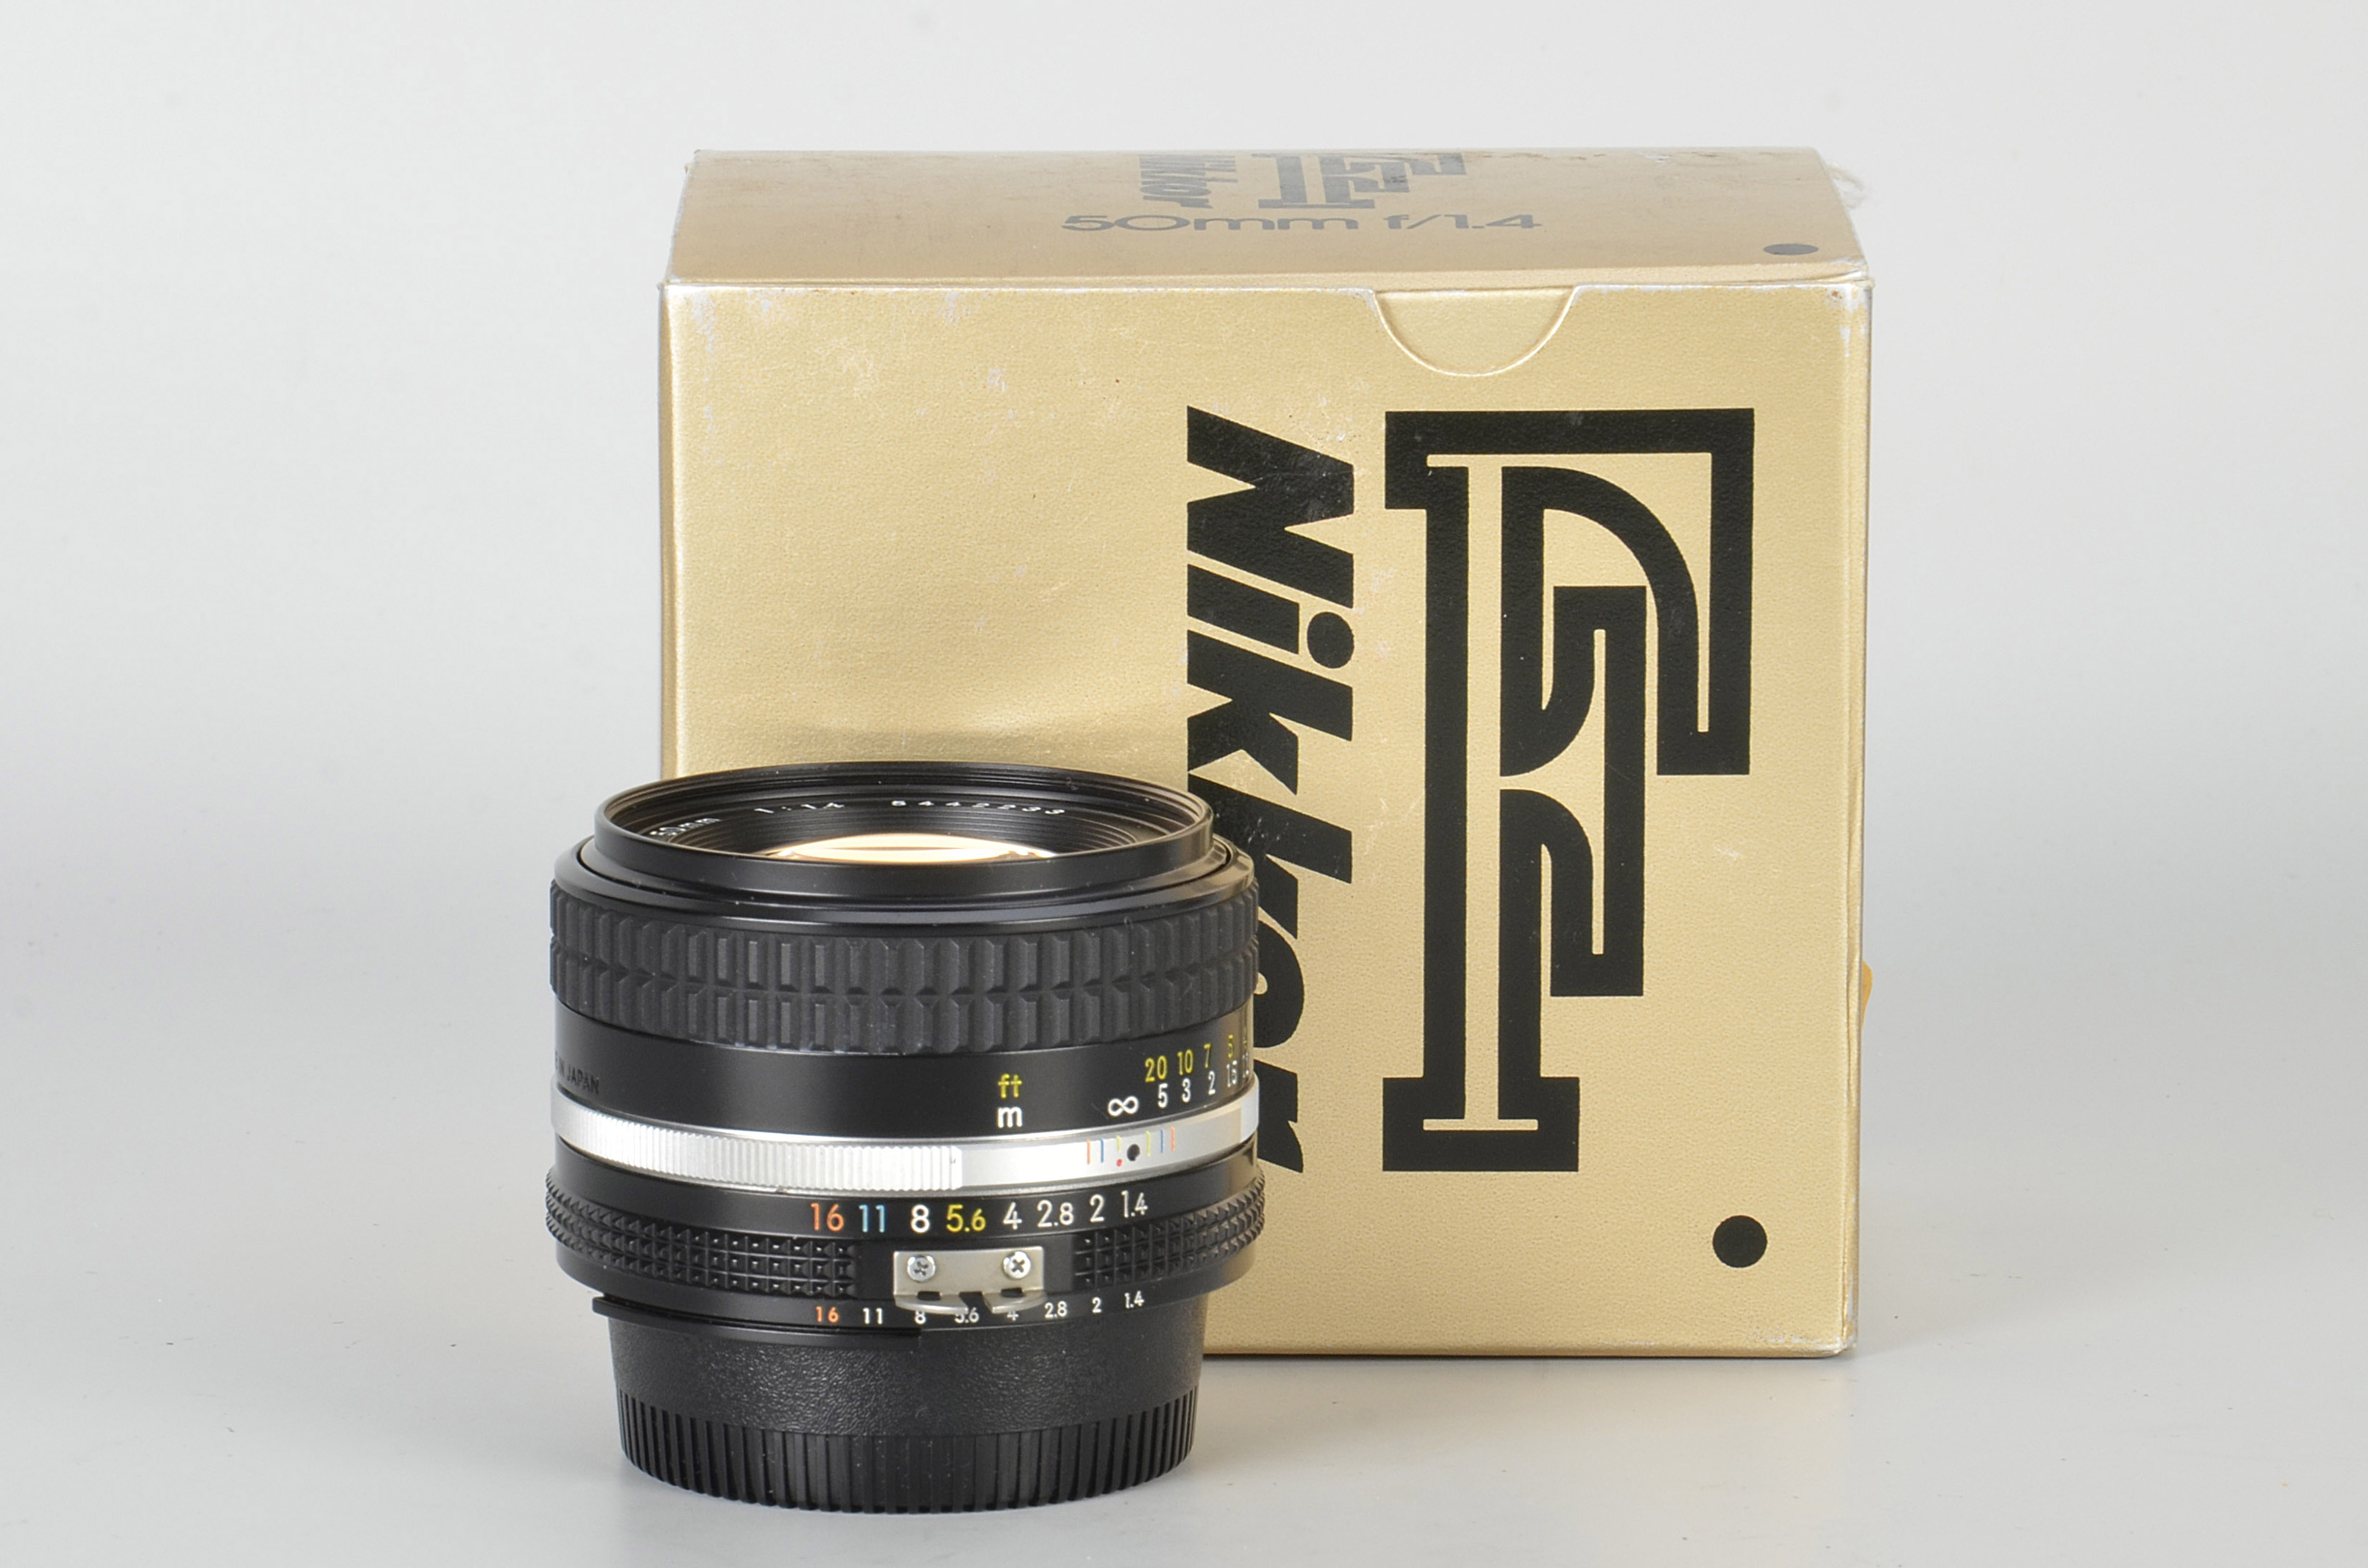 A Nikon AIS f/1.4 50mm Lens, black, serial no. 5442233, body, E, elements, VG-E, some very light